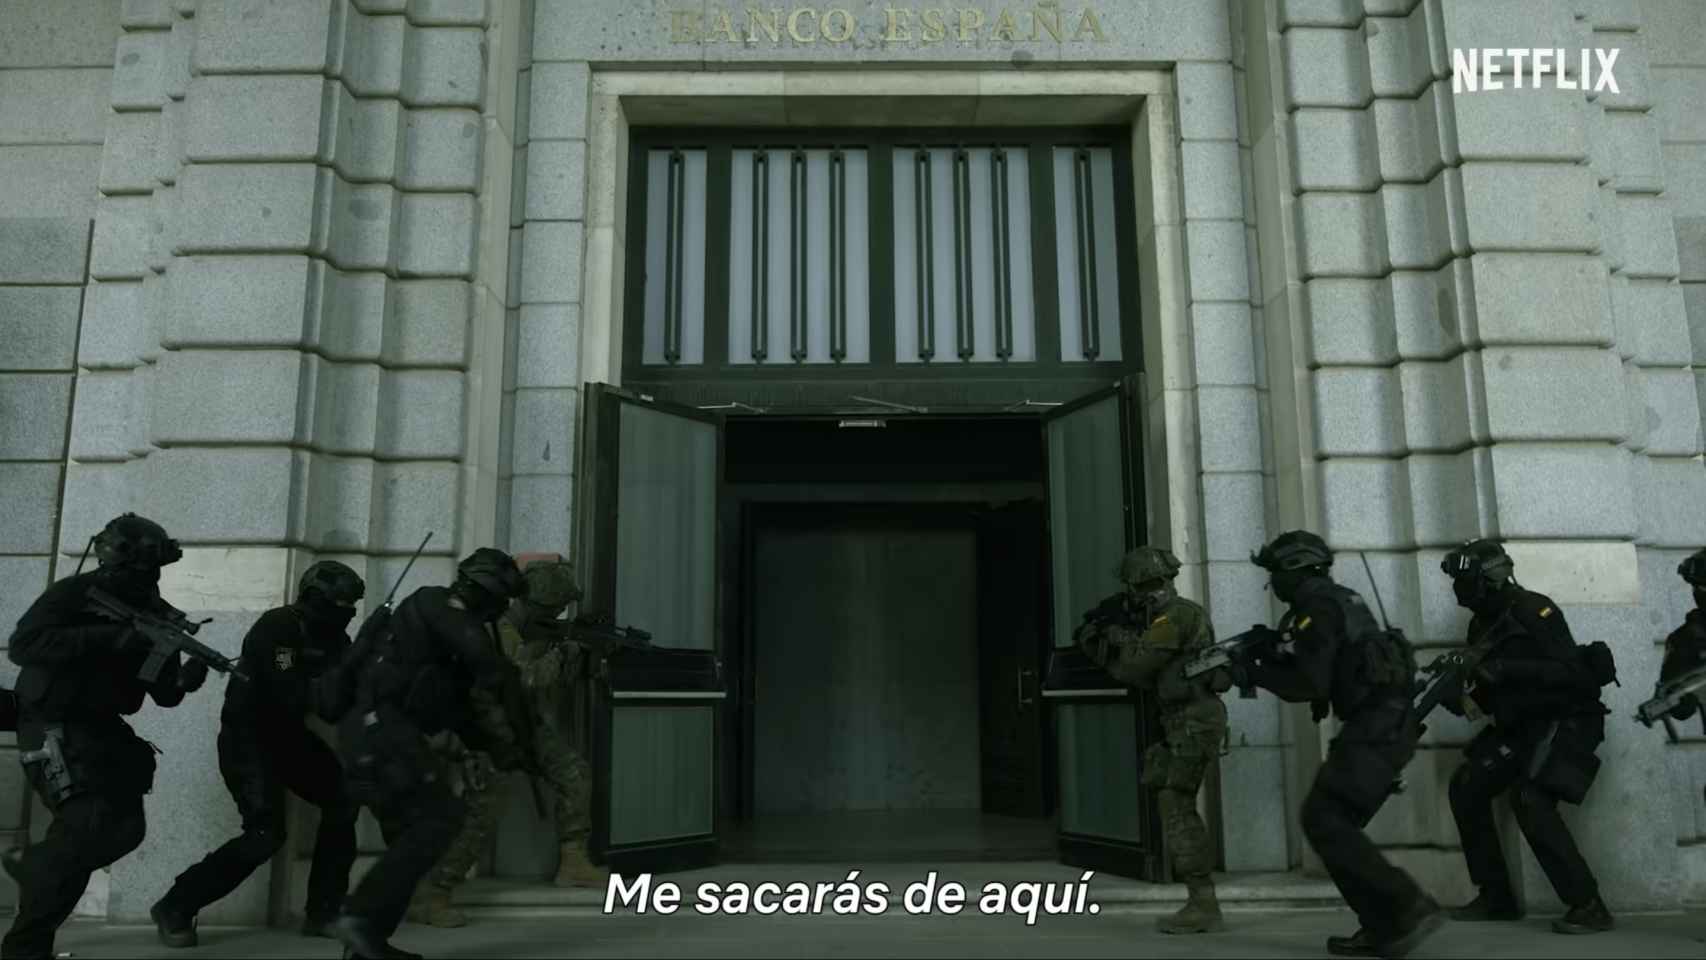 El ejército y la policía en una de las secuencias de la serie.